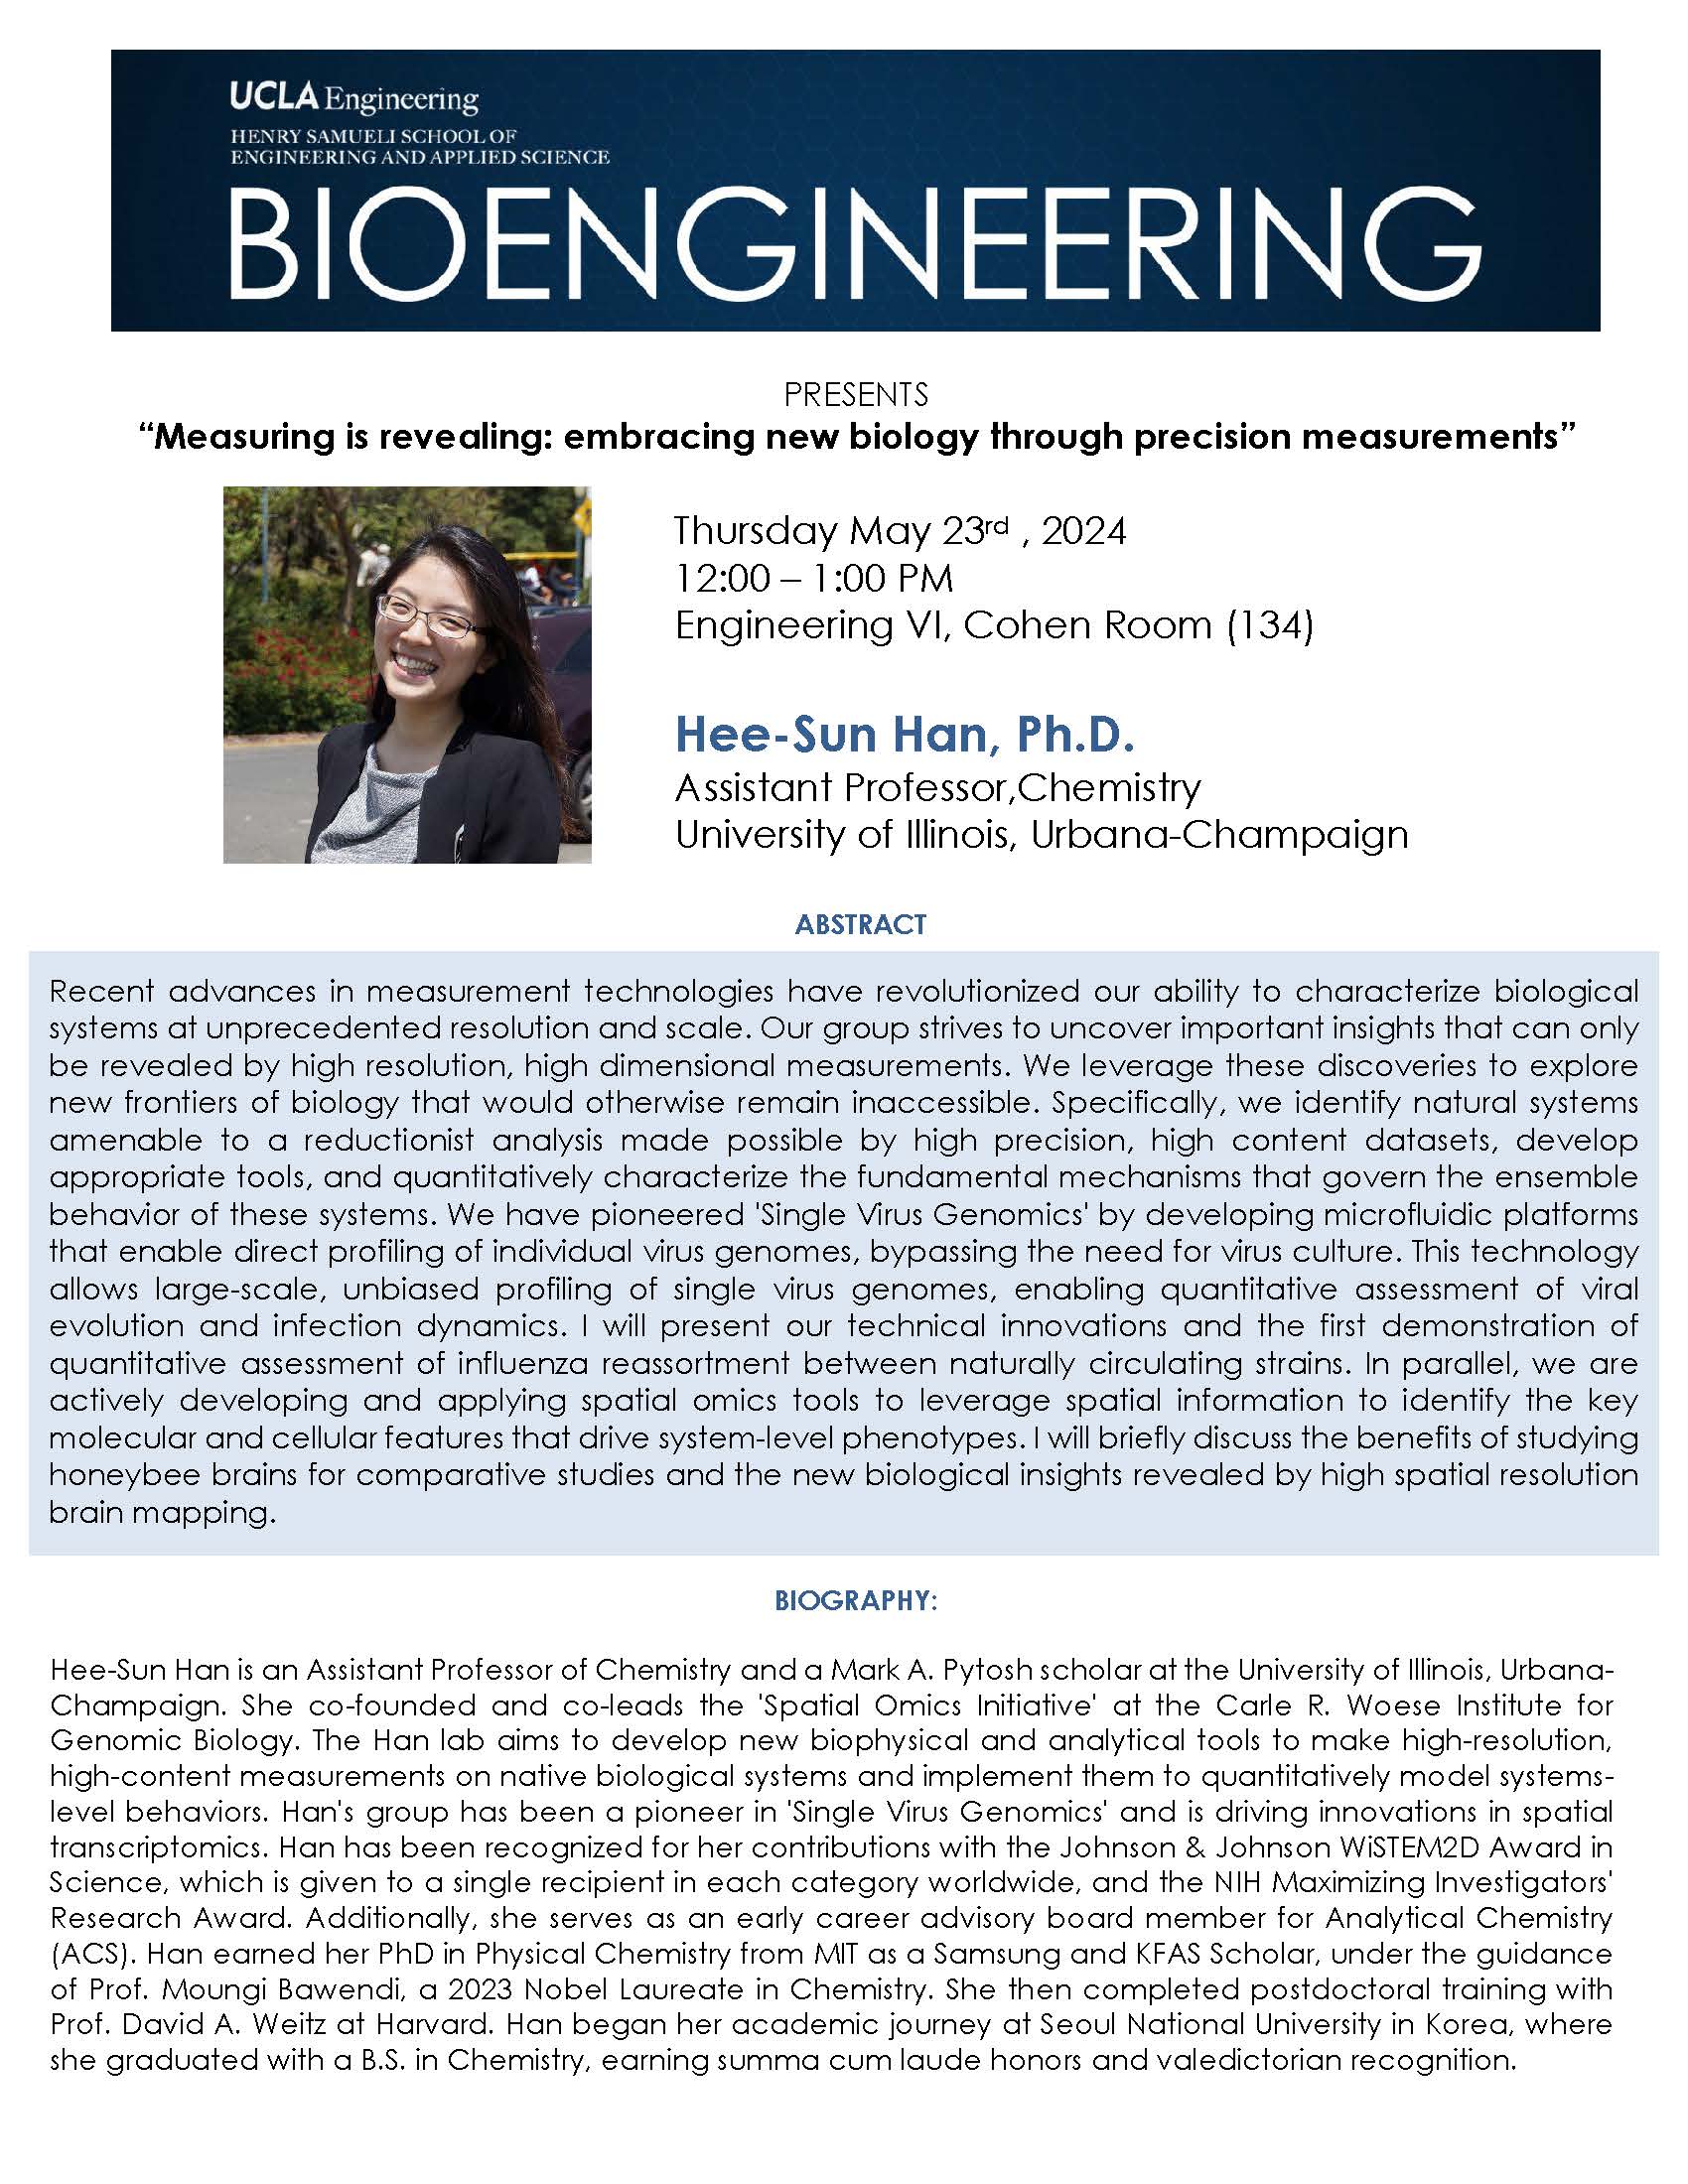 BE 299 Seminar: Hee-Sun Han, Ph.D.